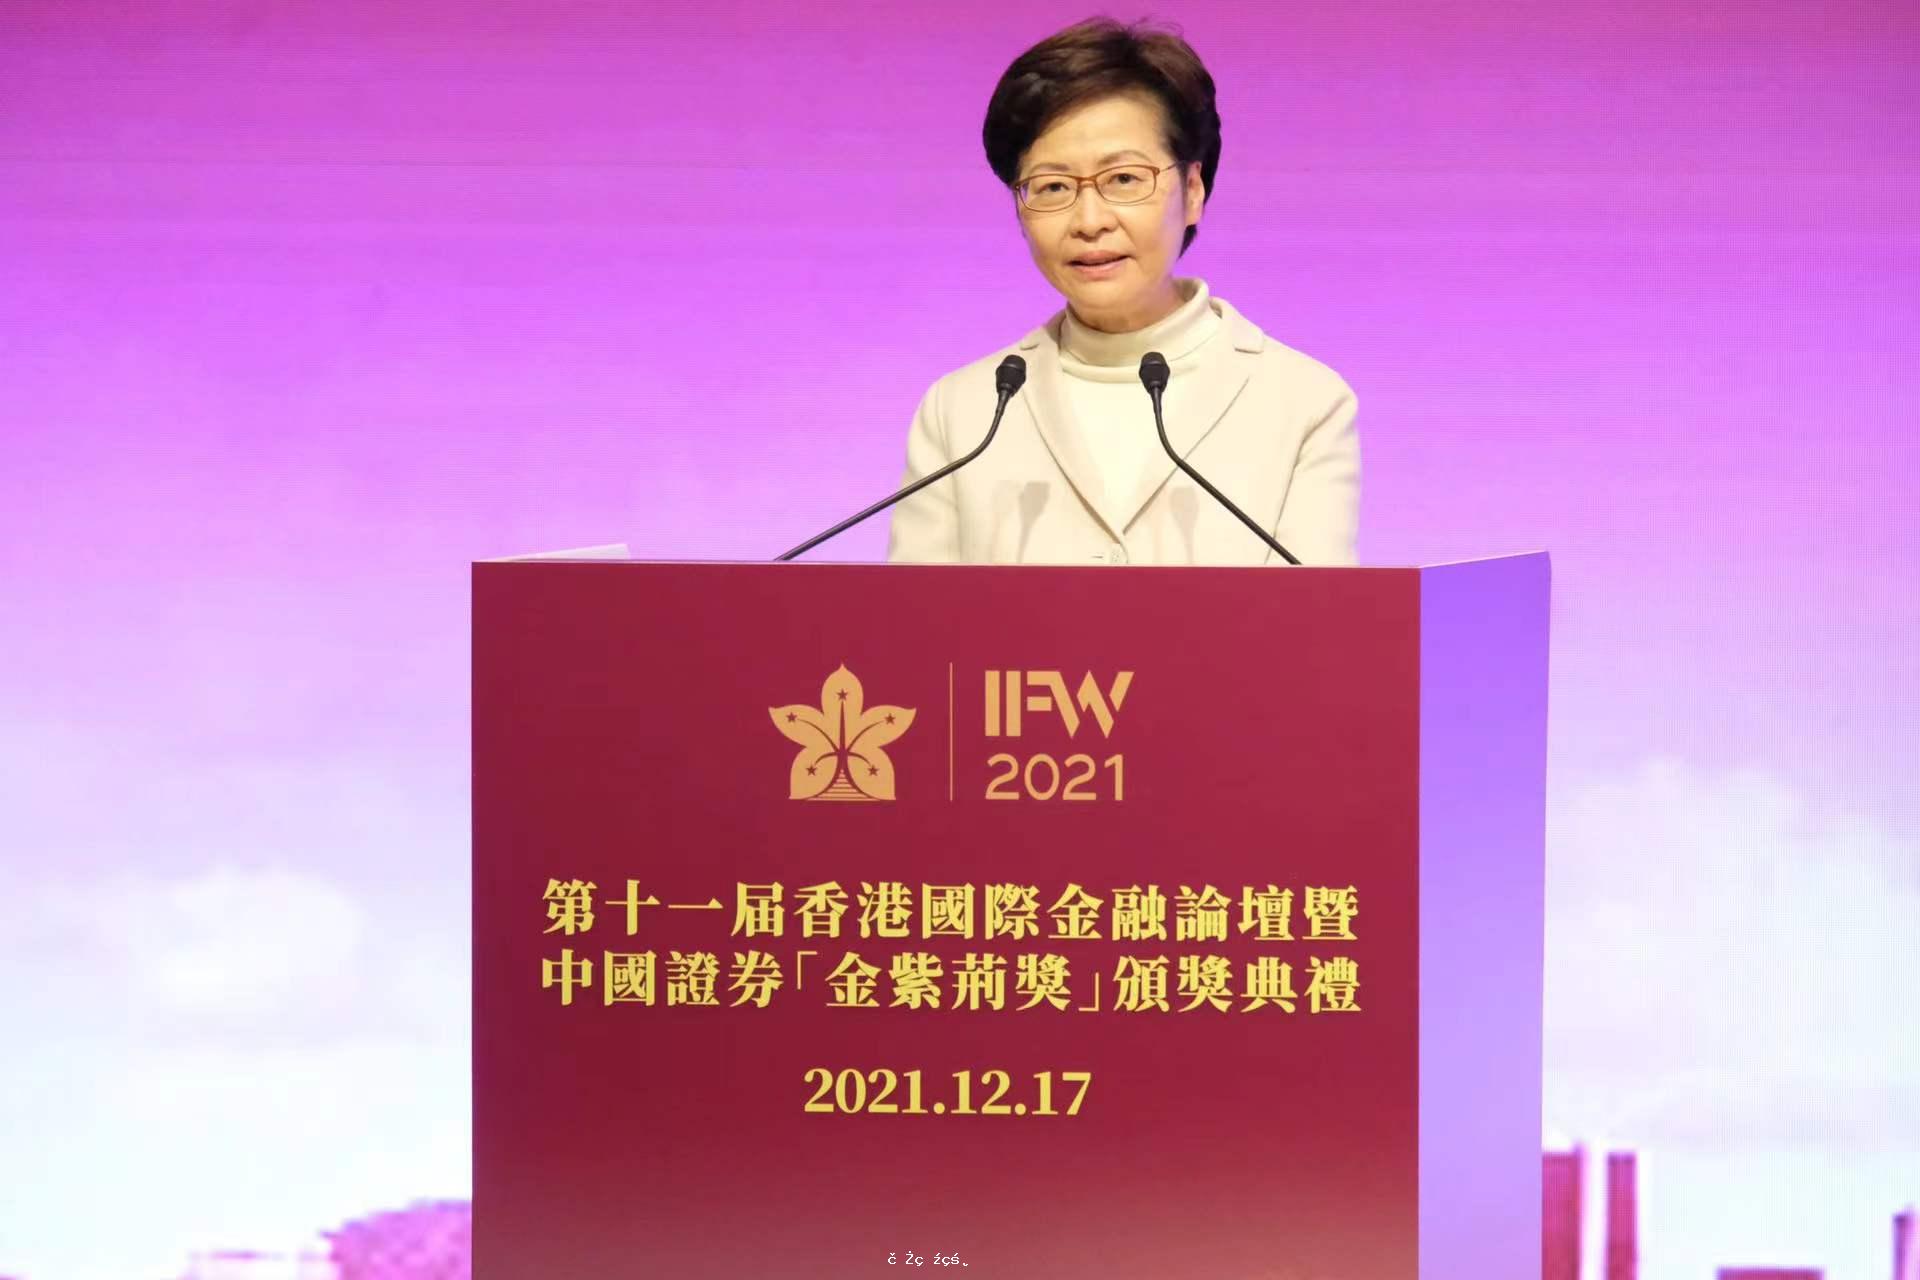 林鄭：香港經濟復甦勢頭良好　放眼大灣區發展機遇